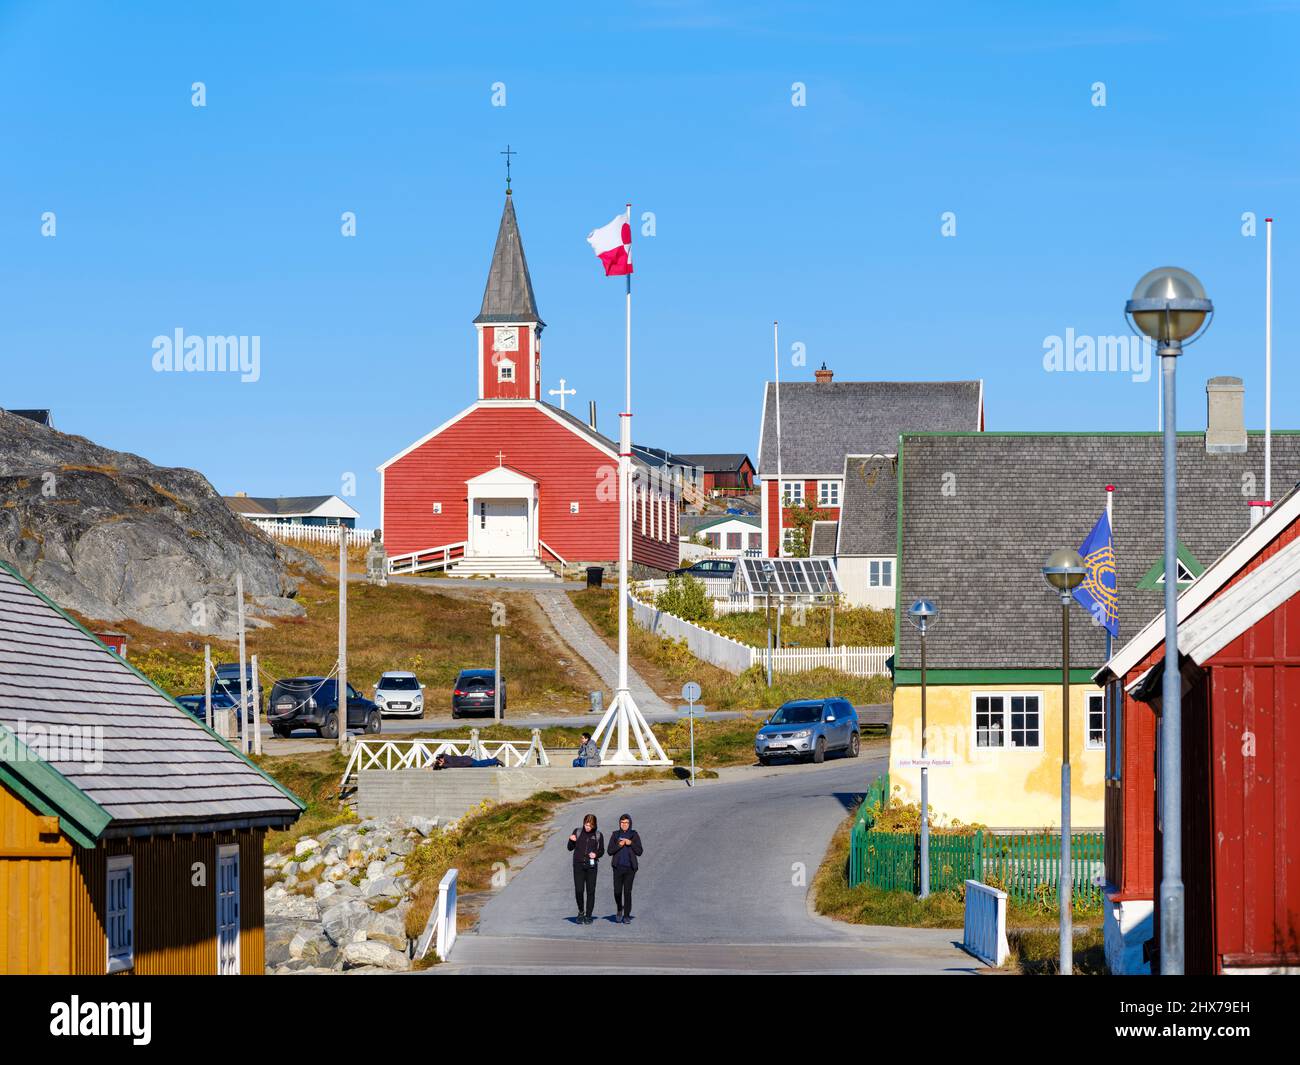 Église de notre sauveur ou Cathédrale de Nuuk (Annaassisitta Oqaluffia). Nuuk la capitale du Groenland à la fin de l'automne. Amérique du Nord, Groenland Banque D'Images